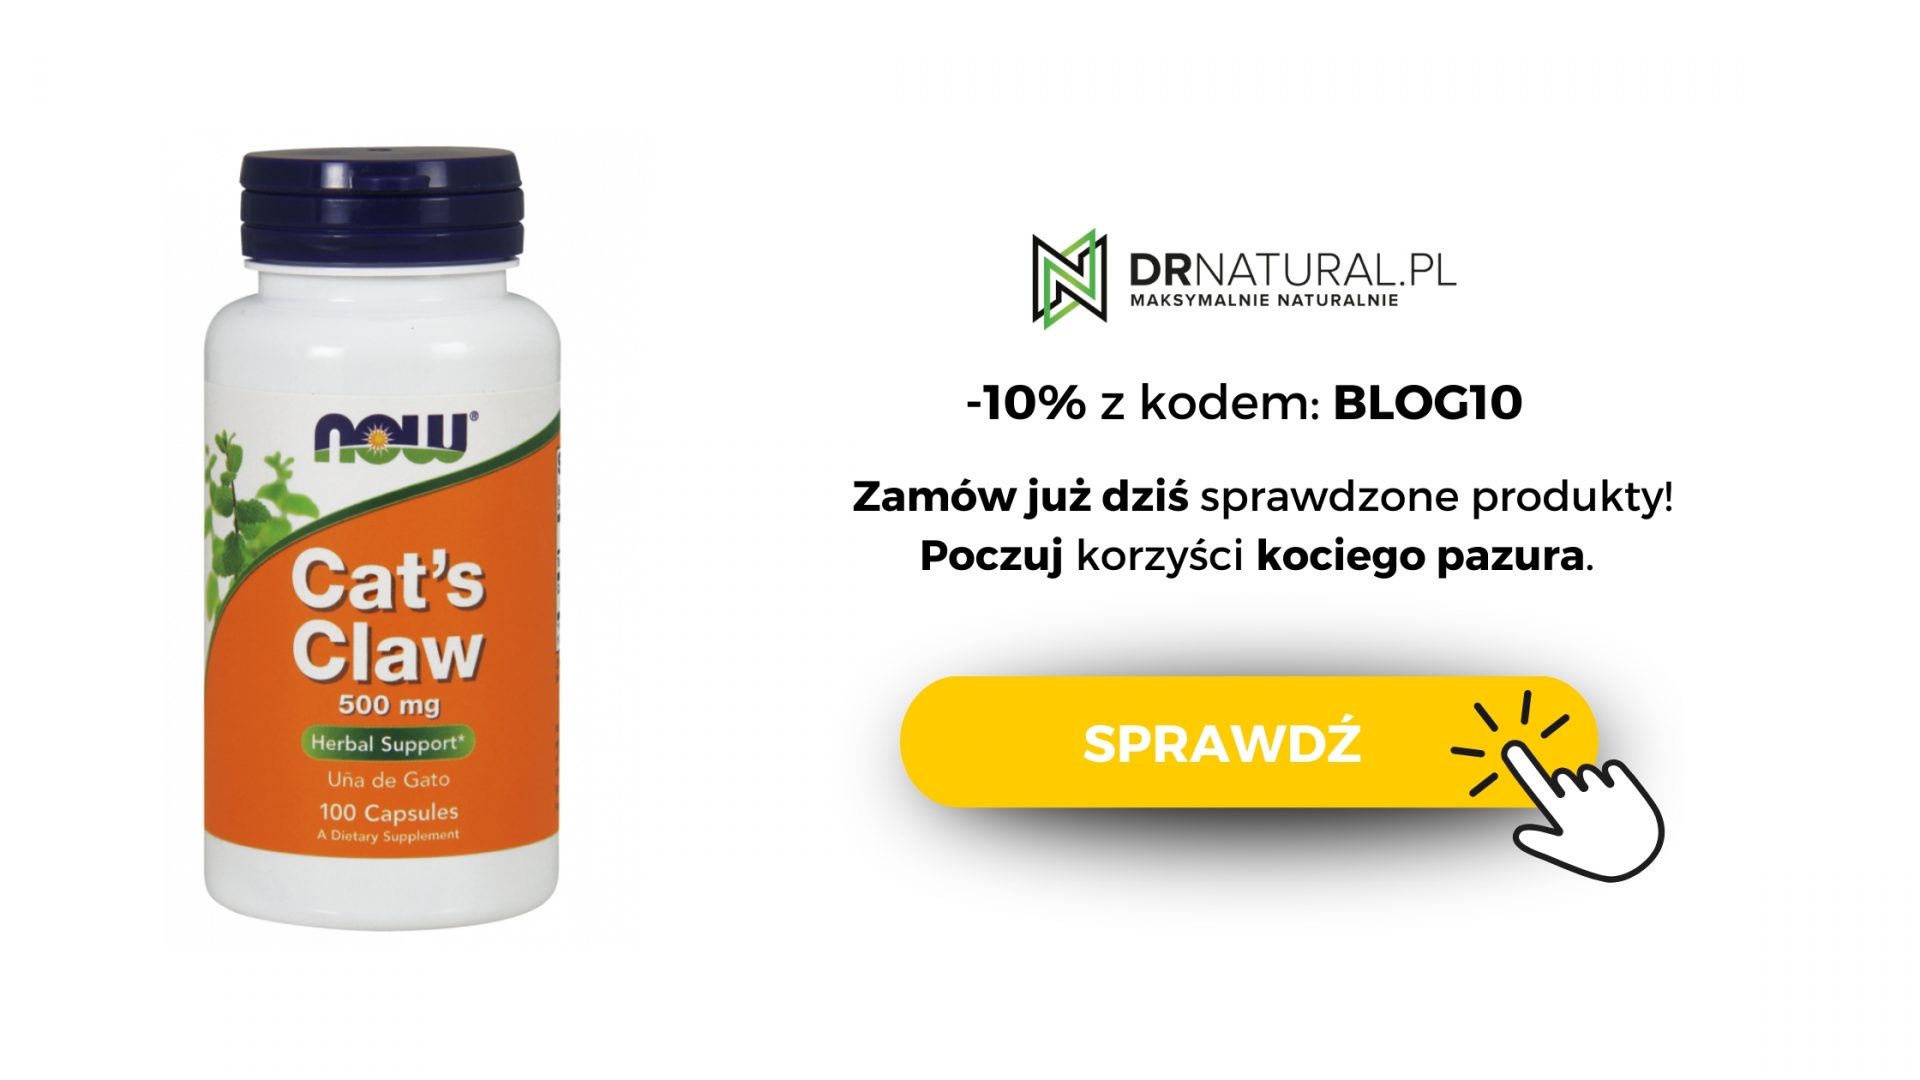 Opakowanie kapsułek Cat's Claw (Koci Pazur) od NOW Foods o pojemności 500 mg, z ofertą rabatową -10% na sprawdzone produkty w sklepie DrNatural.pl.